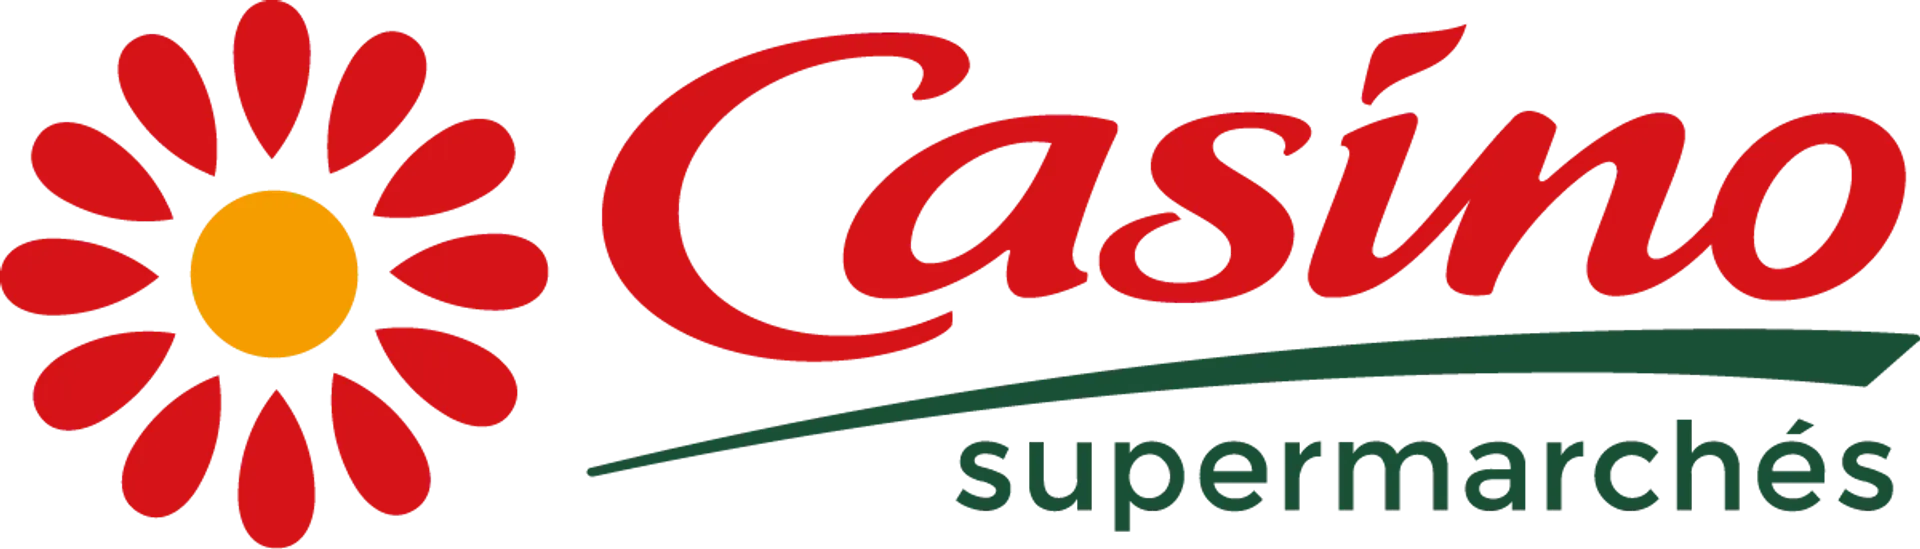 CASINO SUPERMARCHE logo